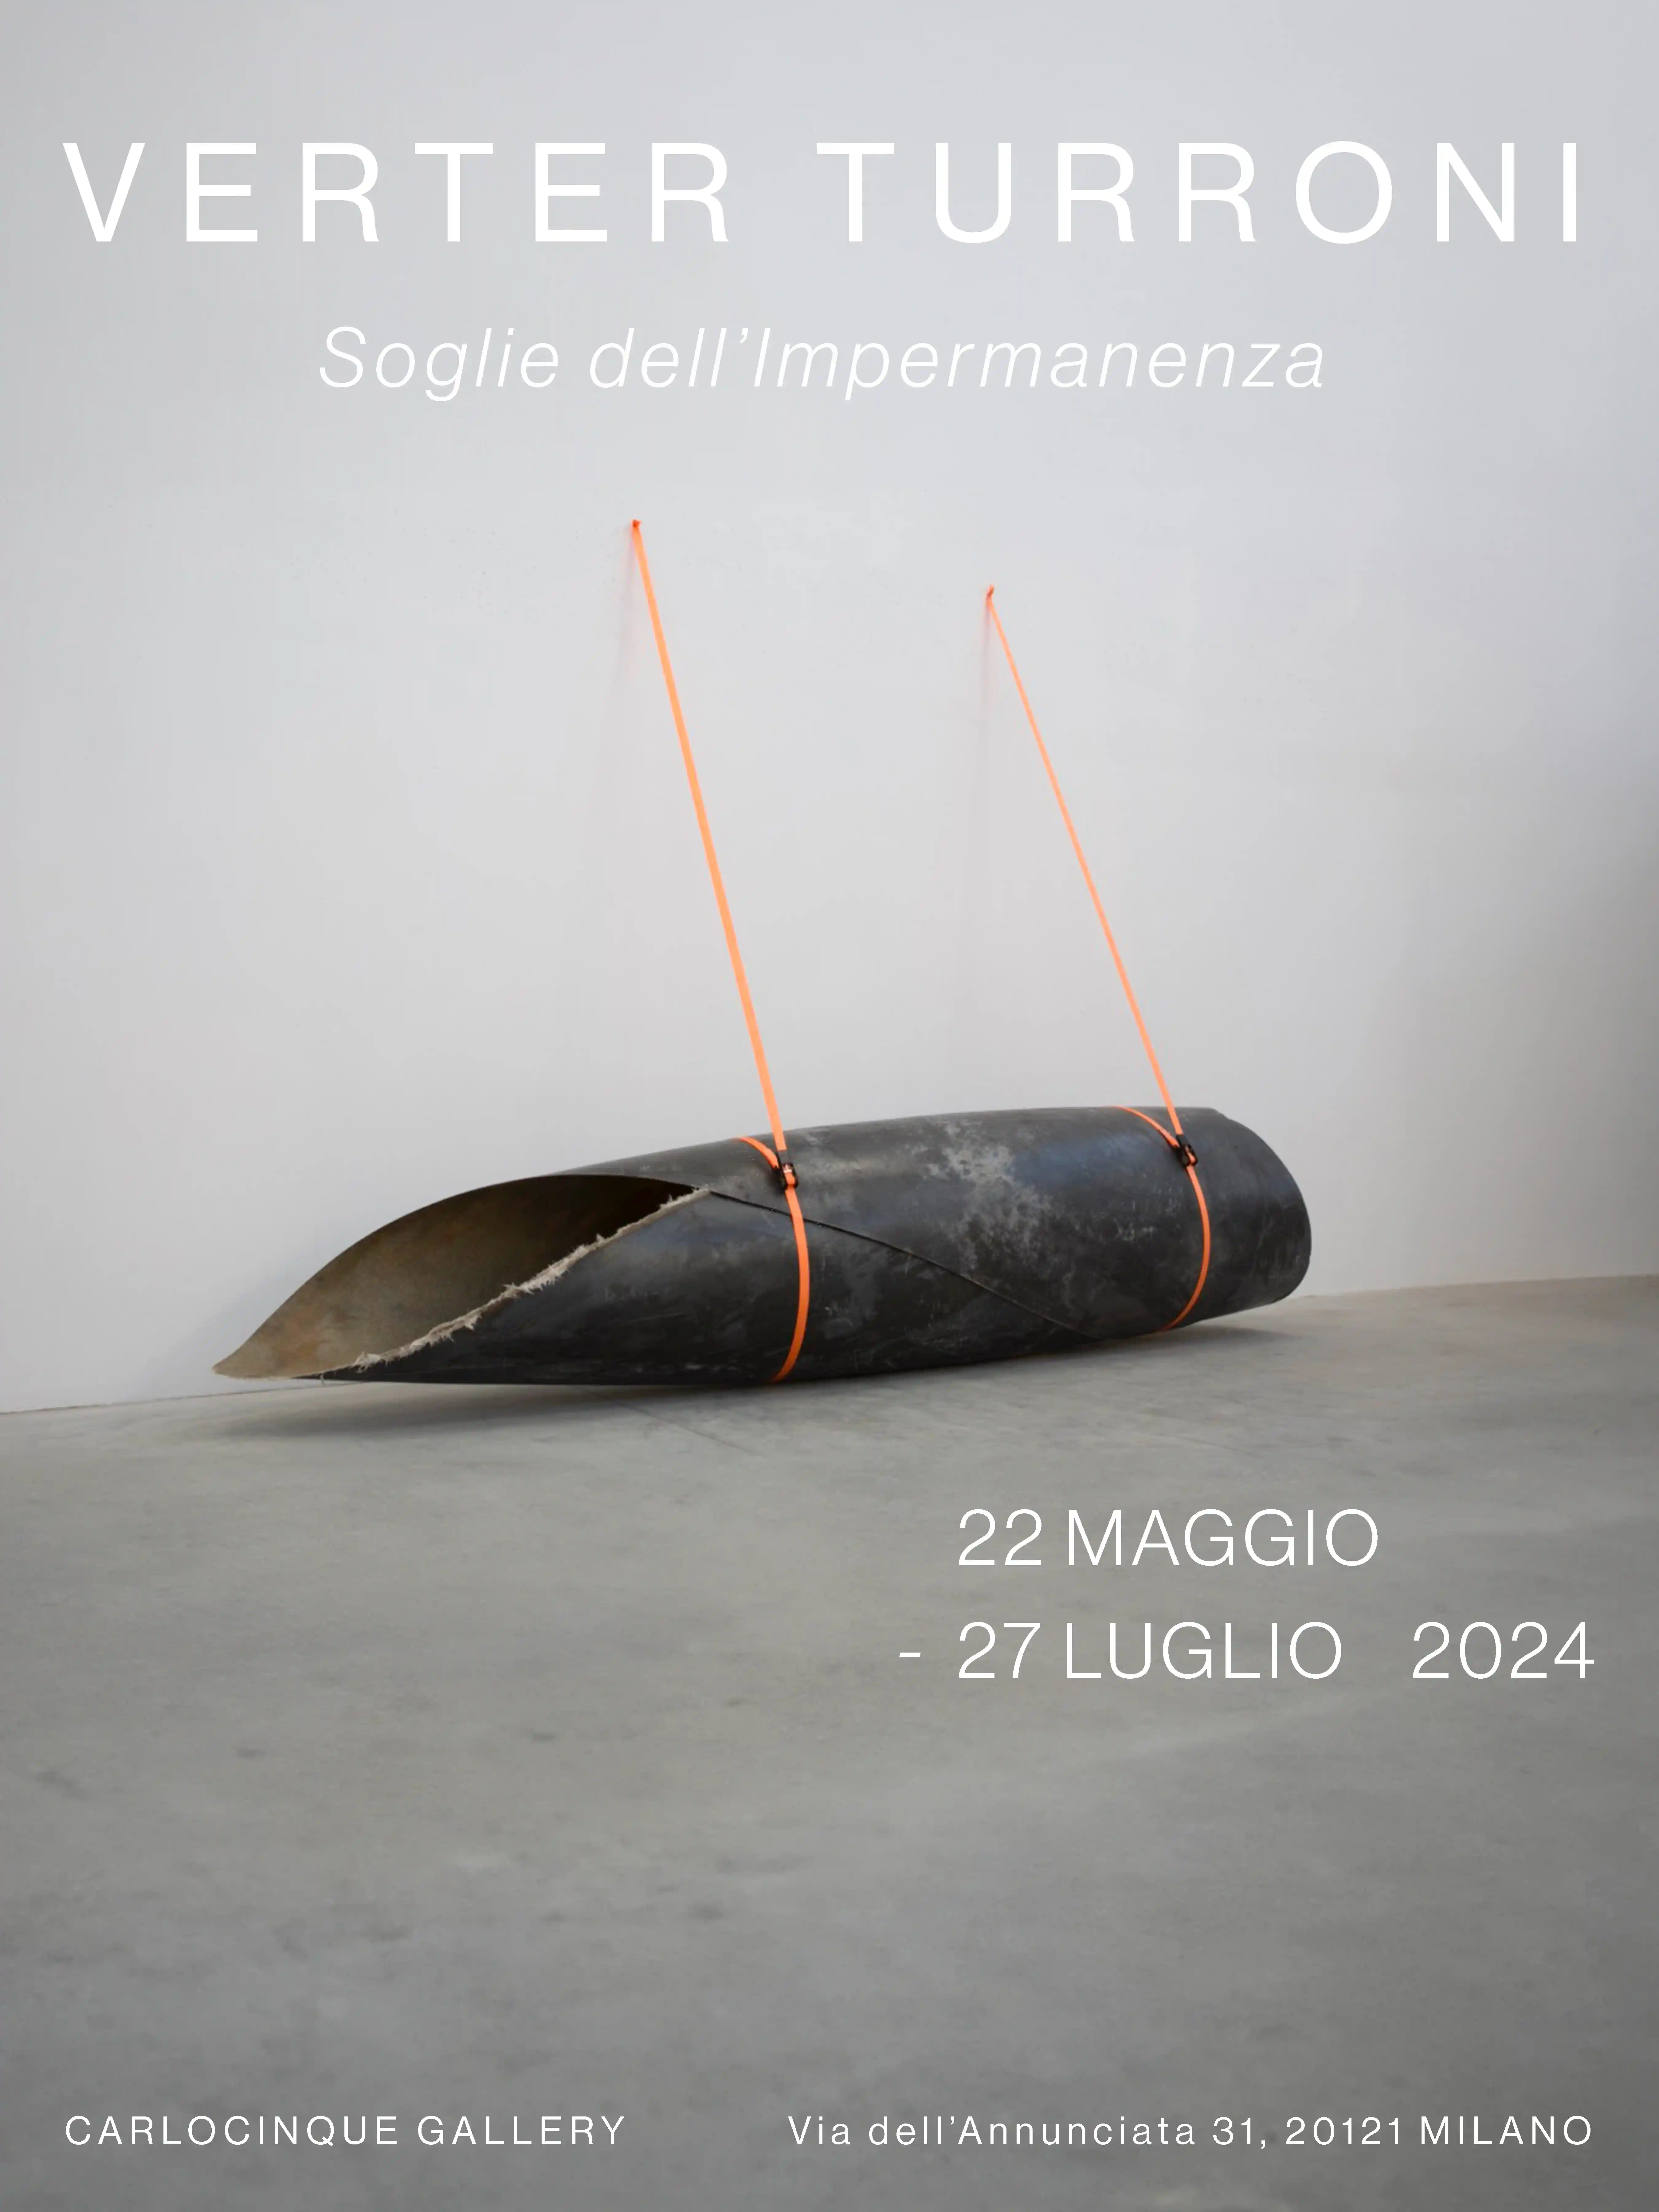 Mostra Verter Turroni: esplora "Soglie dell'impermanenza" alla CARLOCINQUE GALLERY di Milano dal 22 maggio al 27 luglio 2024